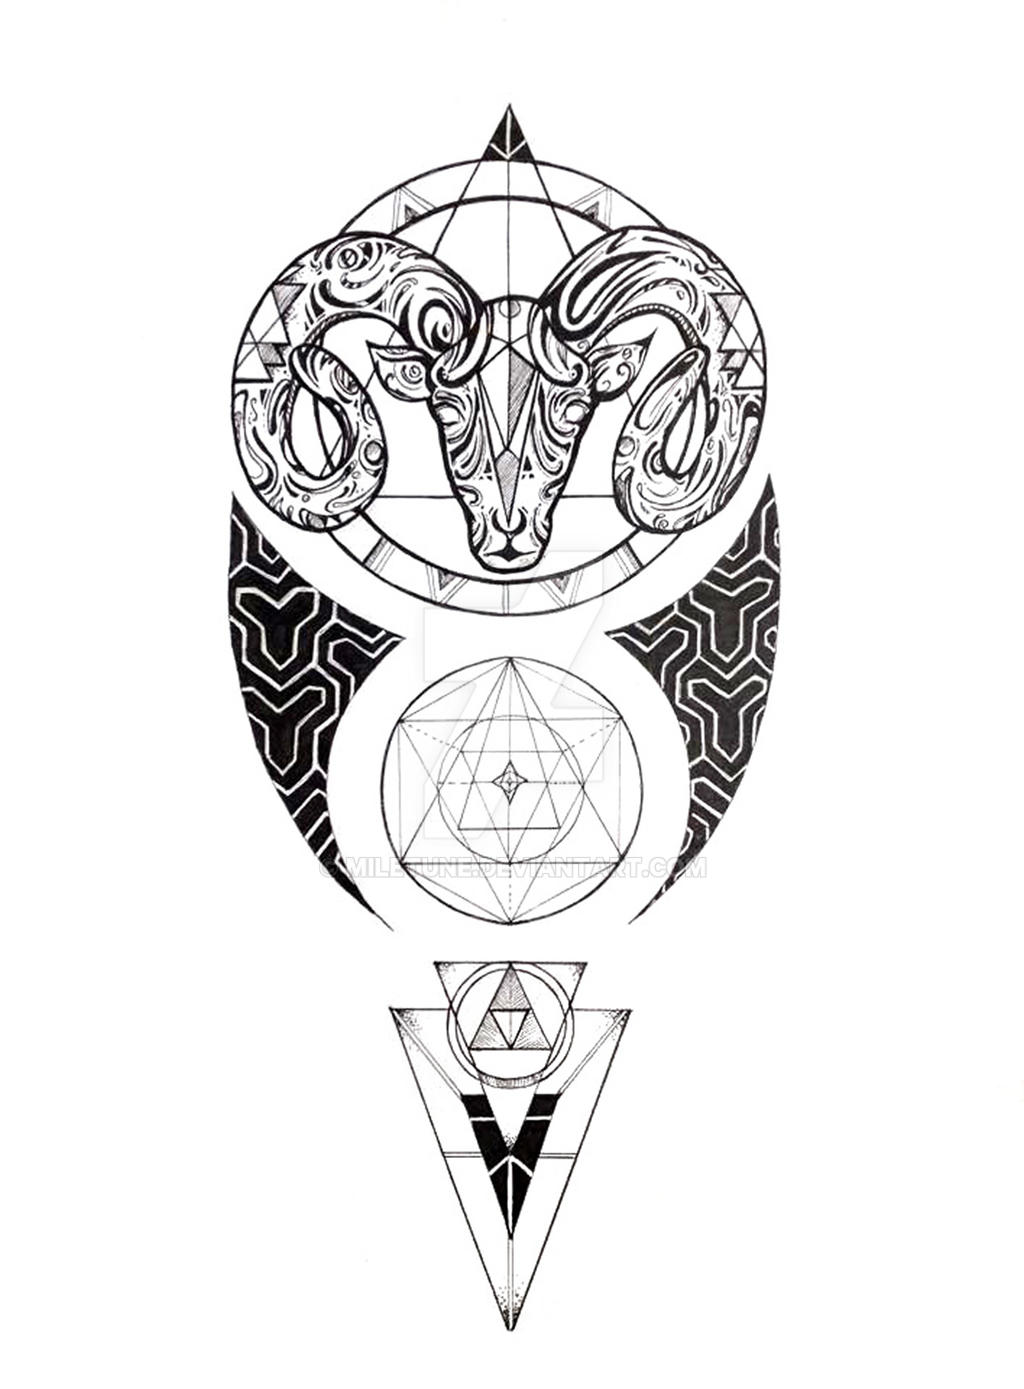 Aries tattoo design by Miletune on DeviantArt